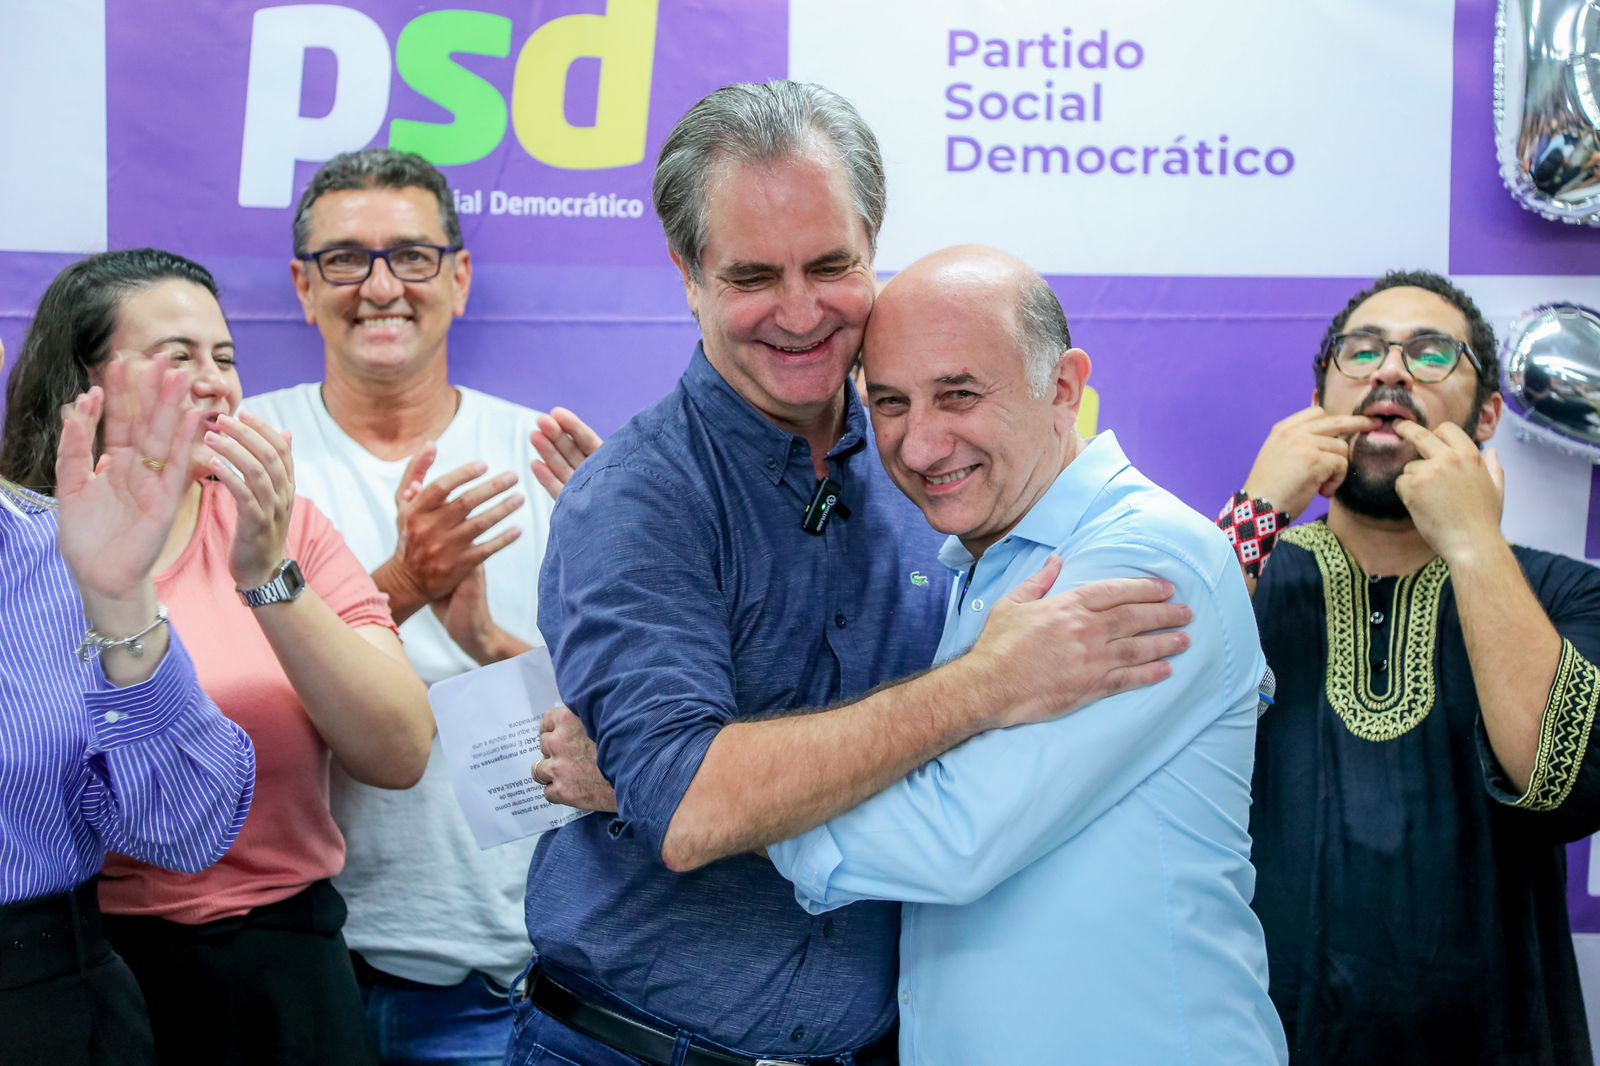 PSD de  Ulisses Maia e Ratinho Junior abraça Scabora